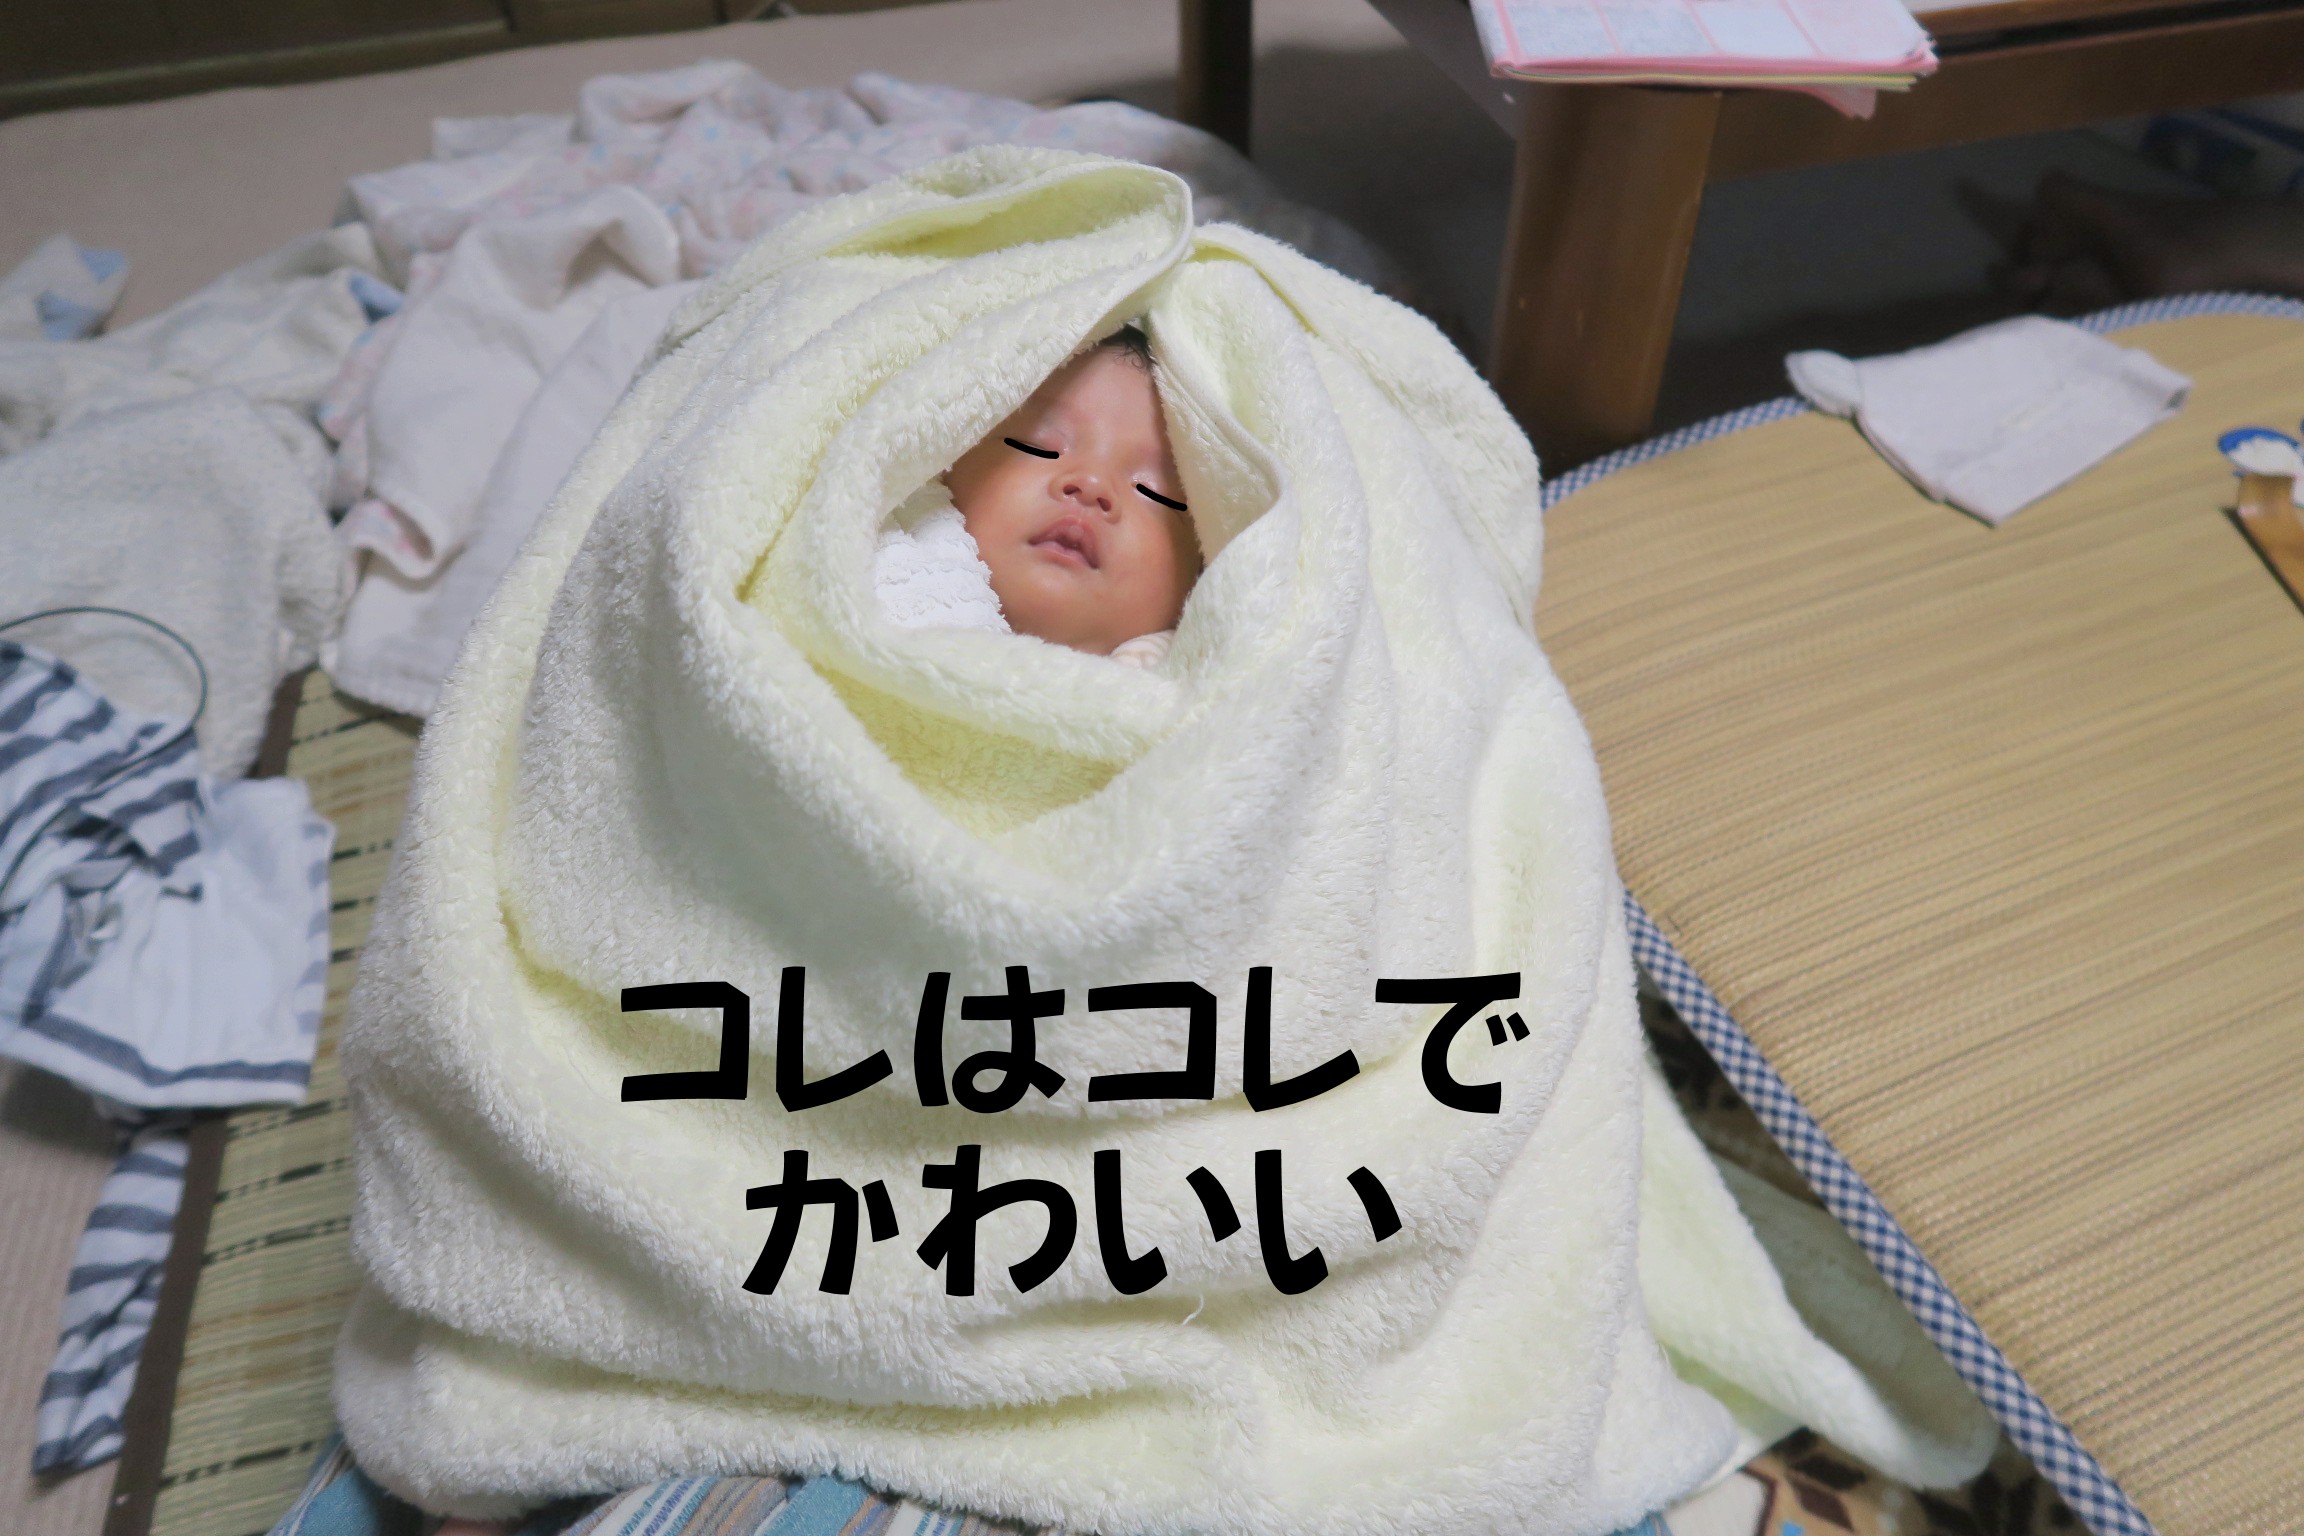 タオルで包まれた新生児の赤ちゃん